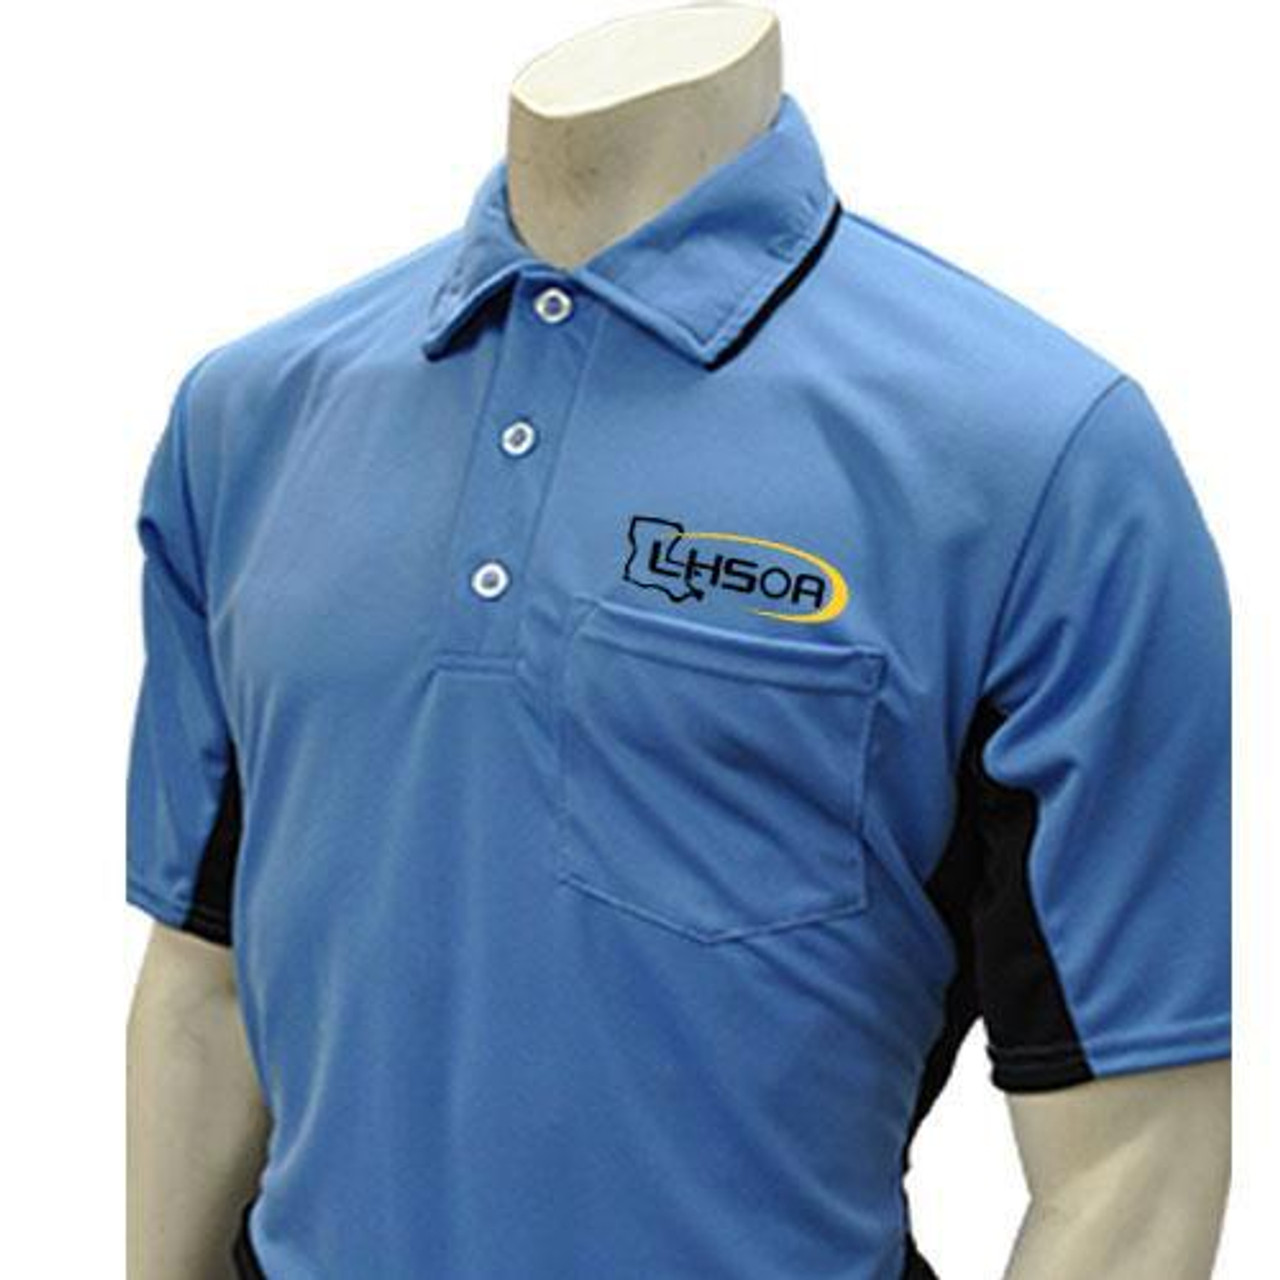 Louisiana LHSOA Embroidered Body Flex® Sky Blue with Black Trim Umpire Shirt